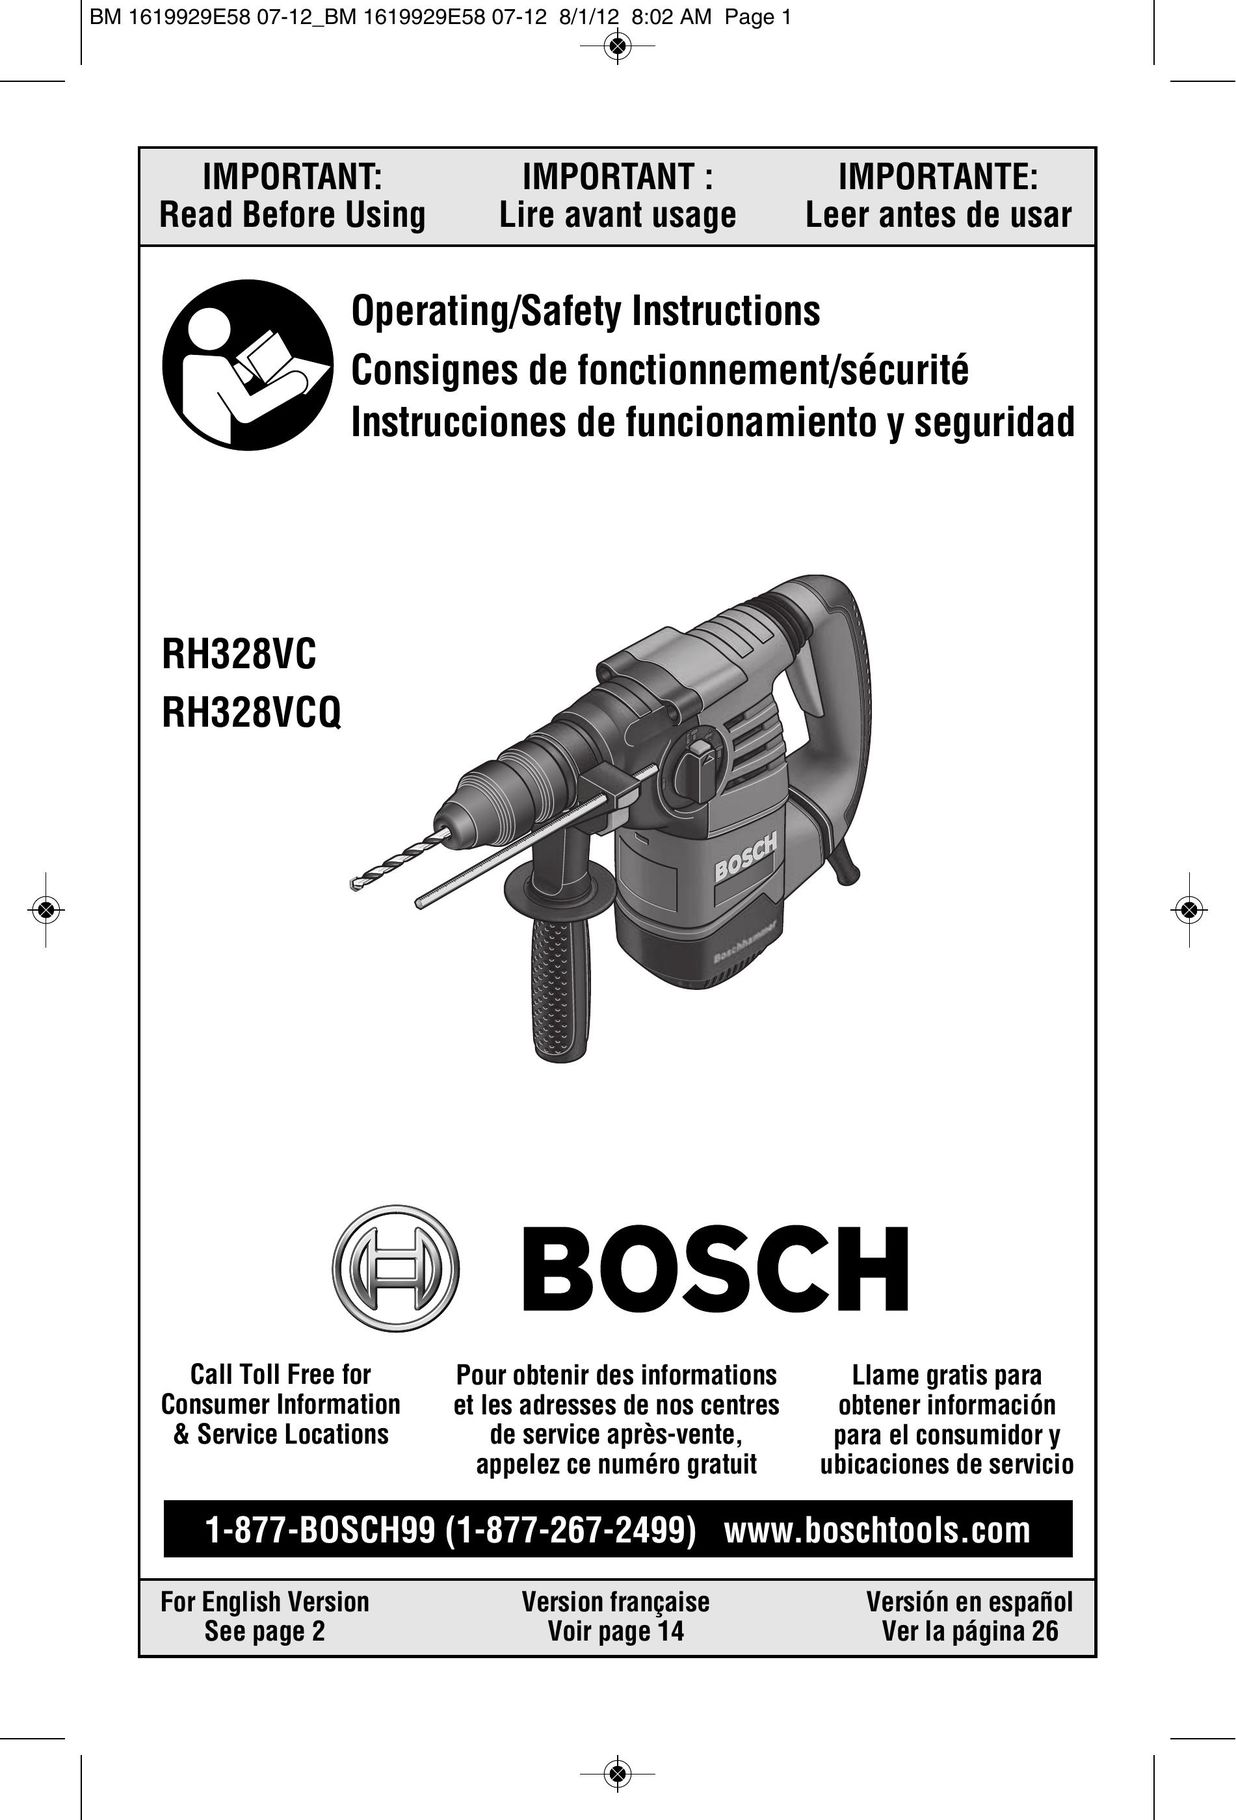 Bosch Power Tools RH328VCQ Power Hammer User Manual